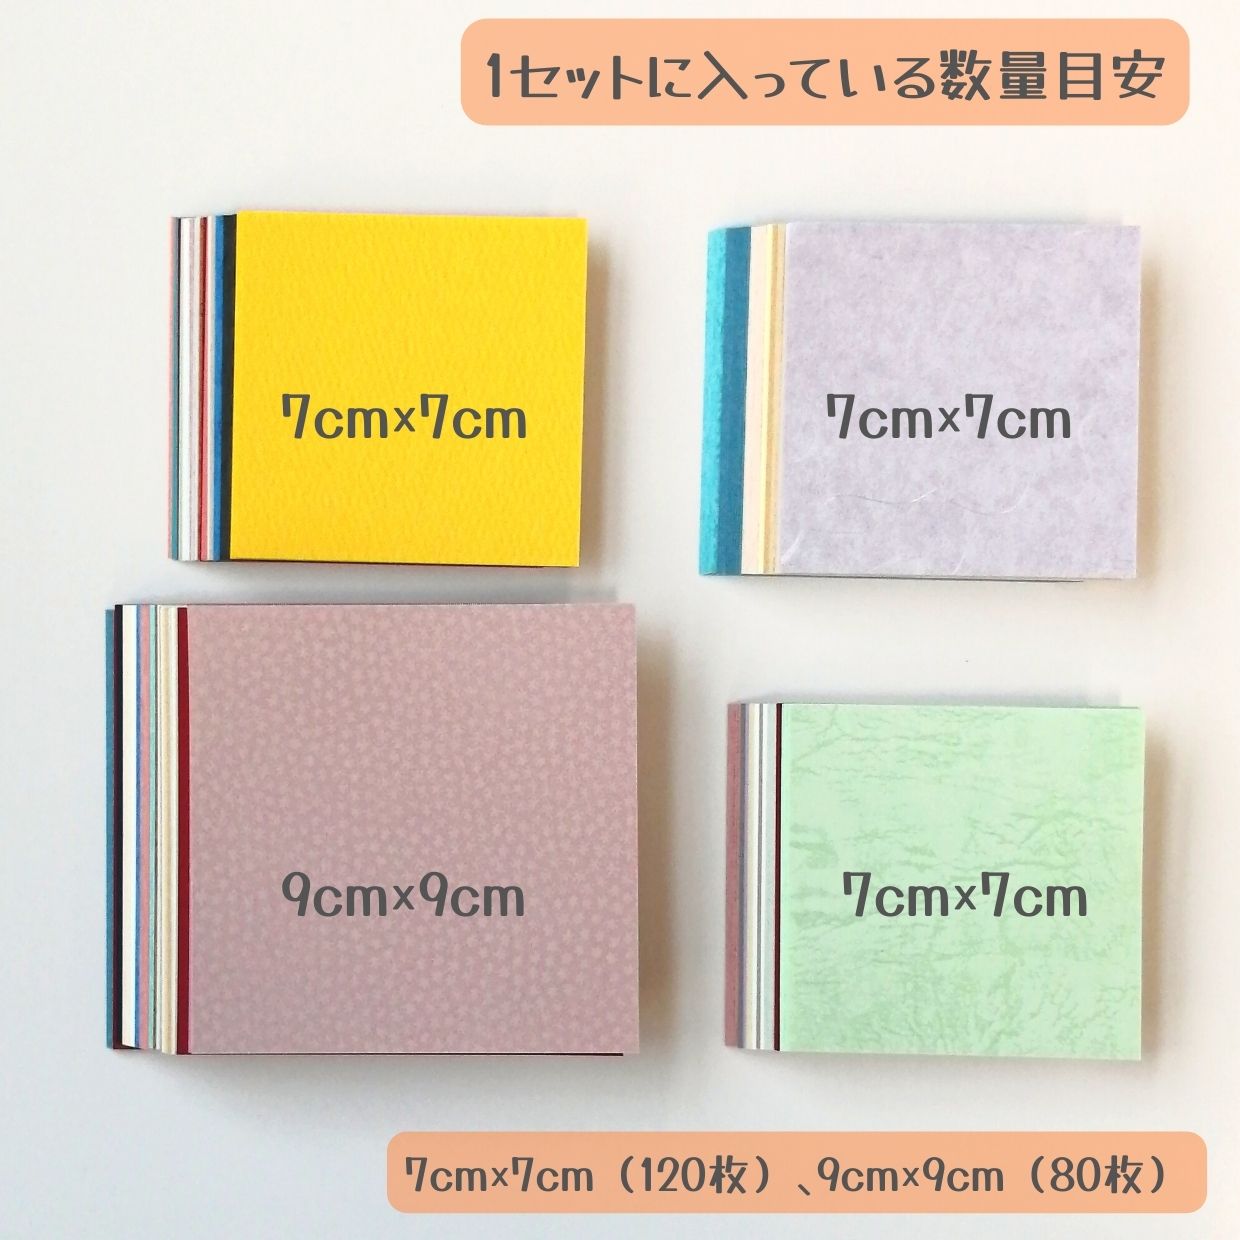  бумага магазин san. otosi было использовано квадратное особый бумага fancy бумага ... развлечение бумага оригами память комплект [ кошка pohs отгрузка ]